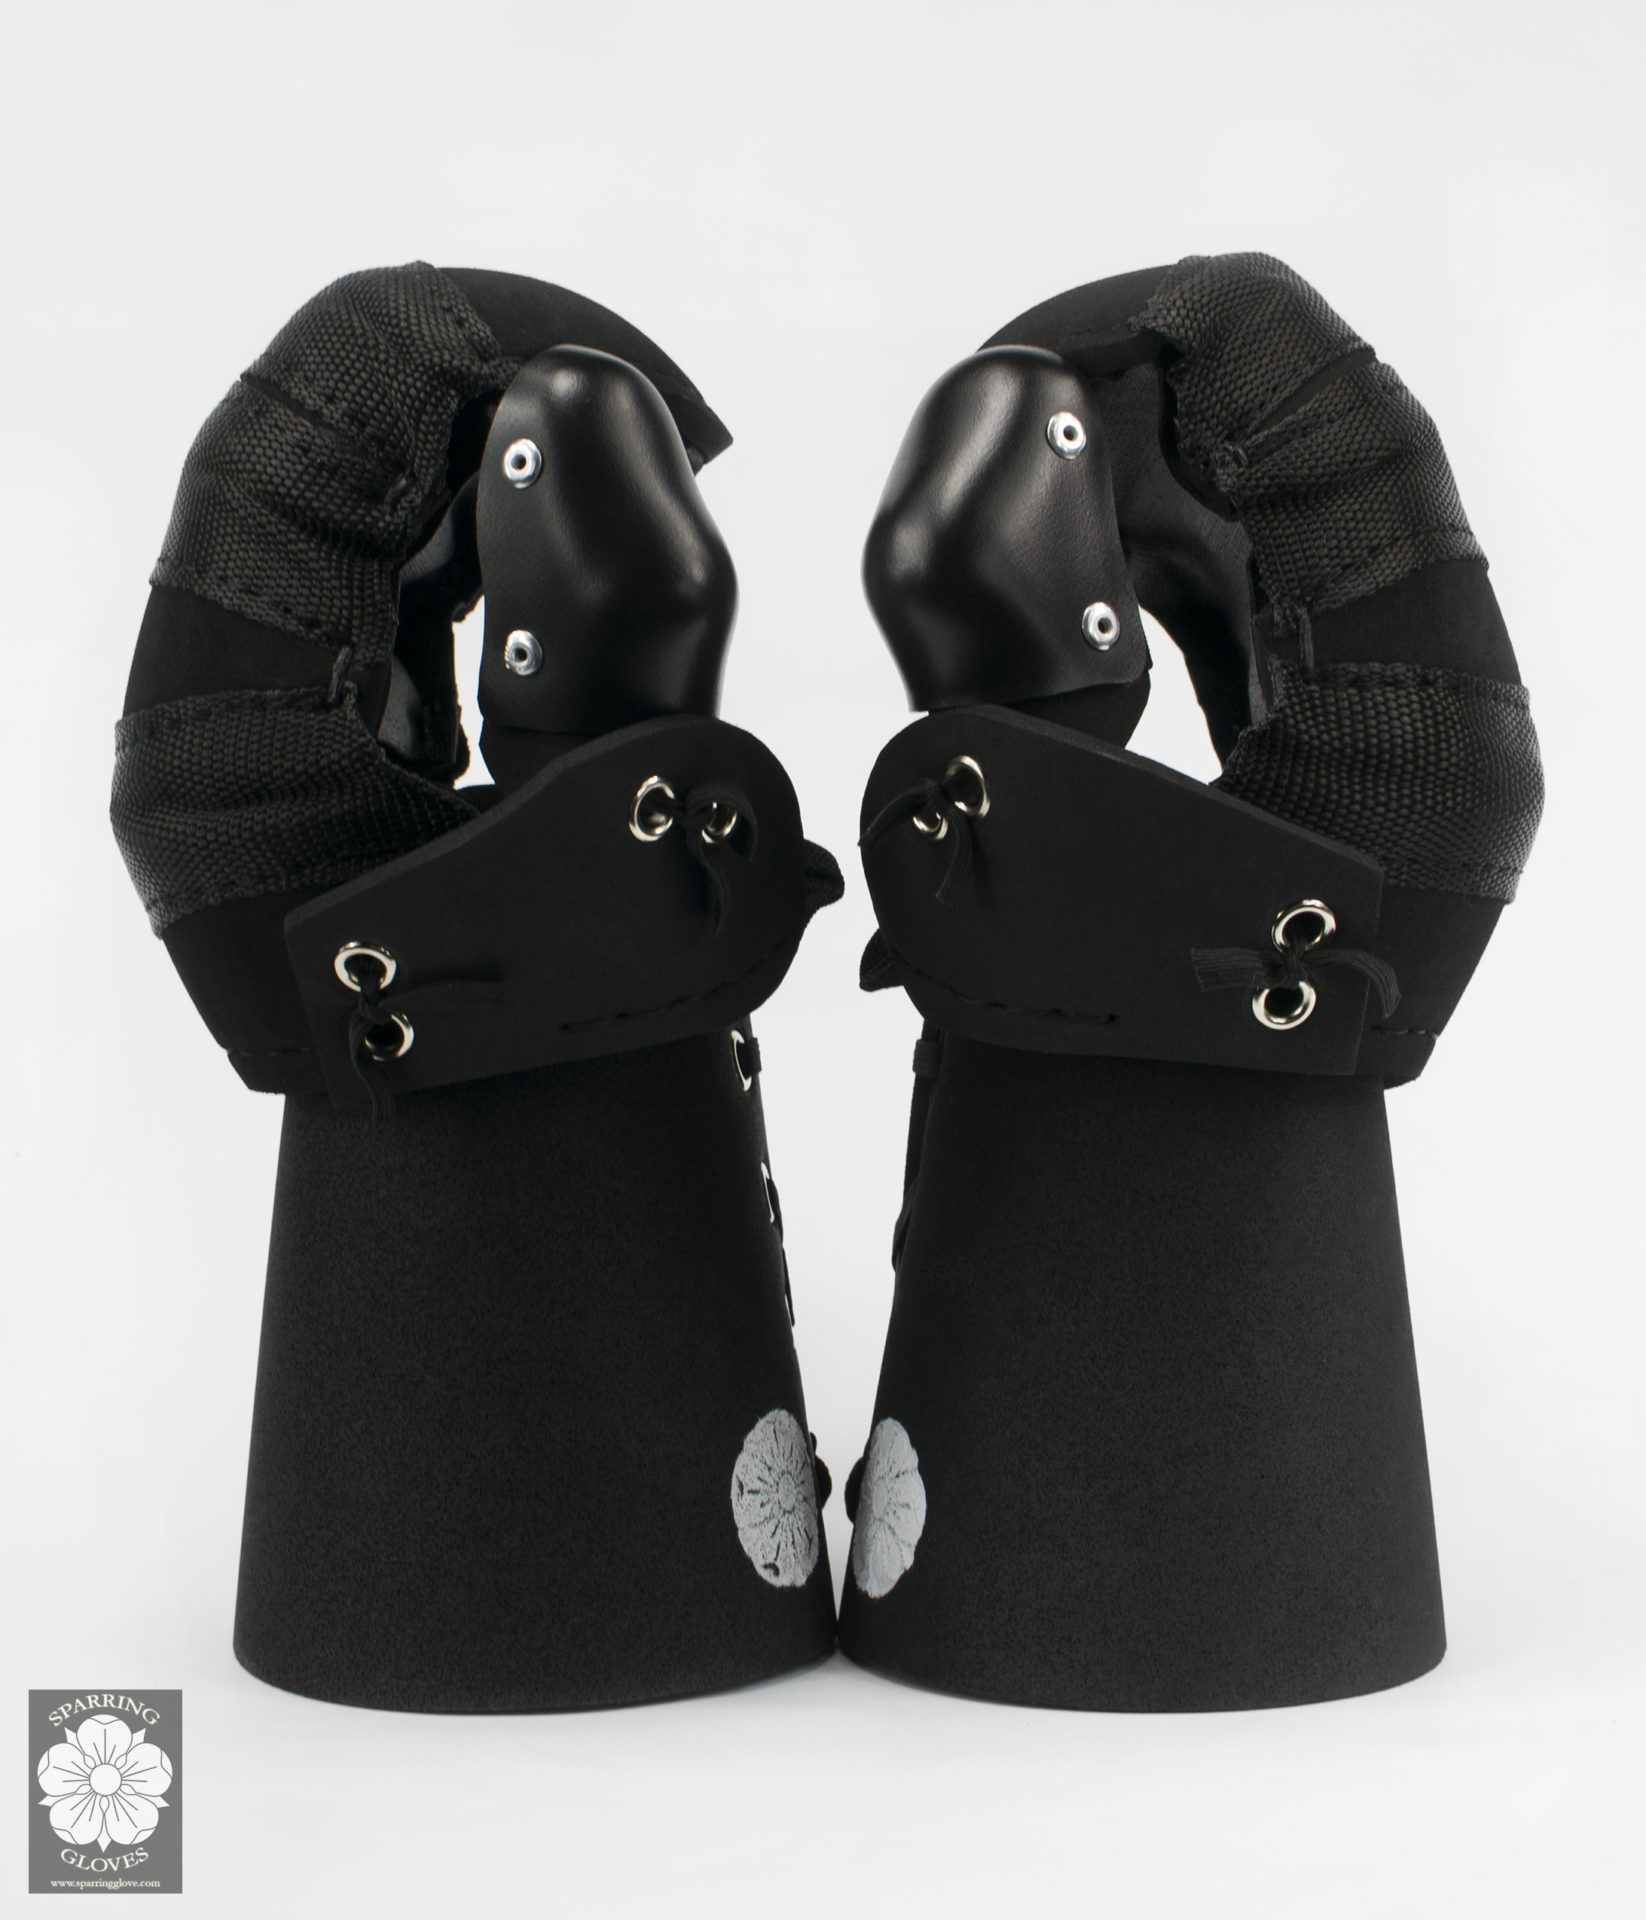 MITTENS – Sparring Glove